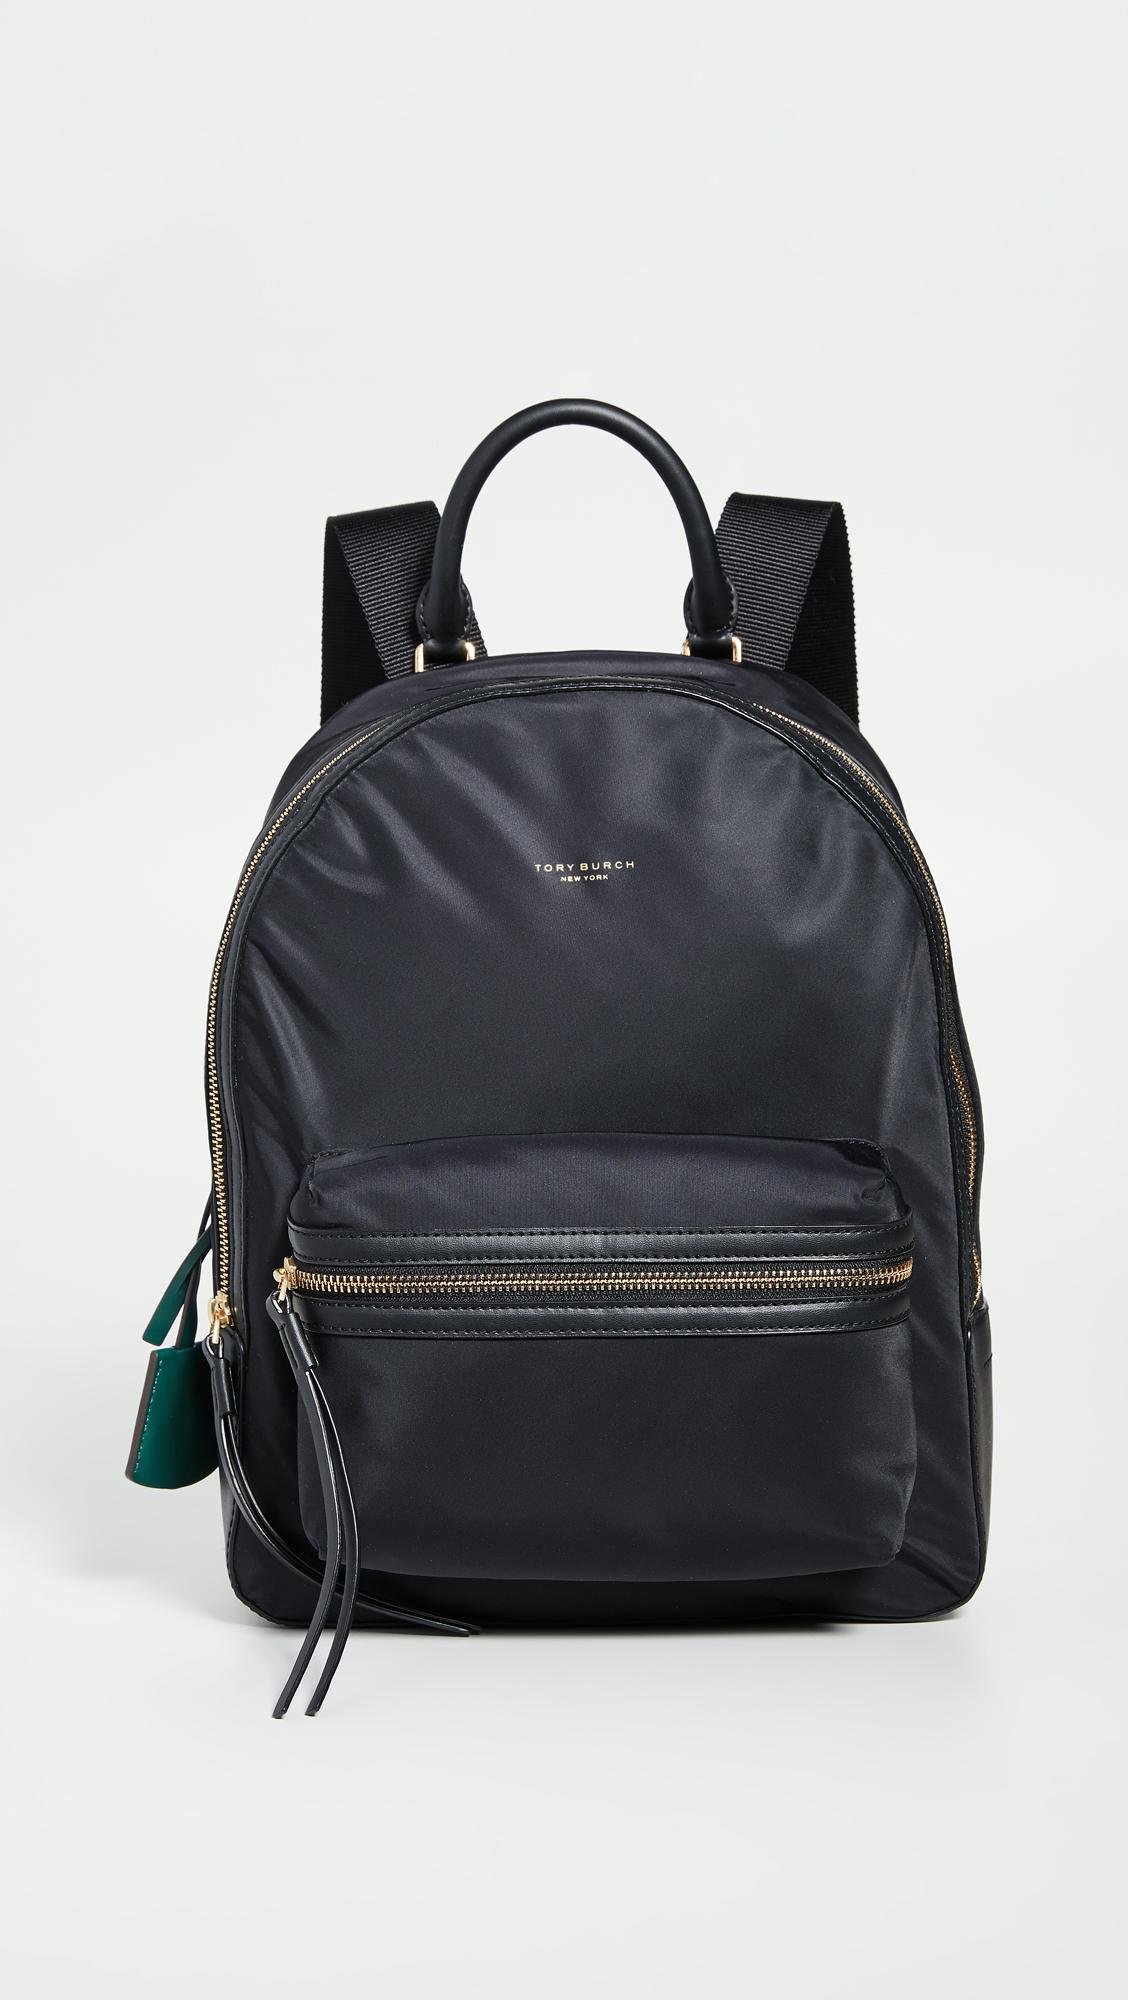 Backpacks Tory Burch - Perry backpack - 74462001